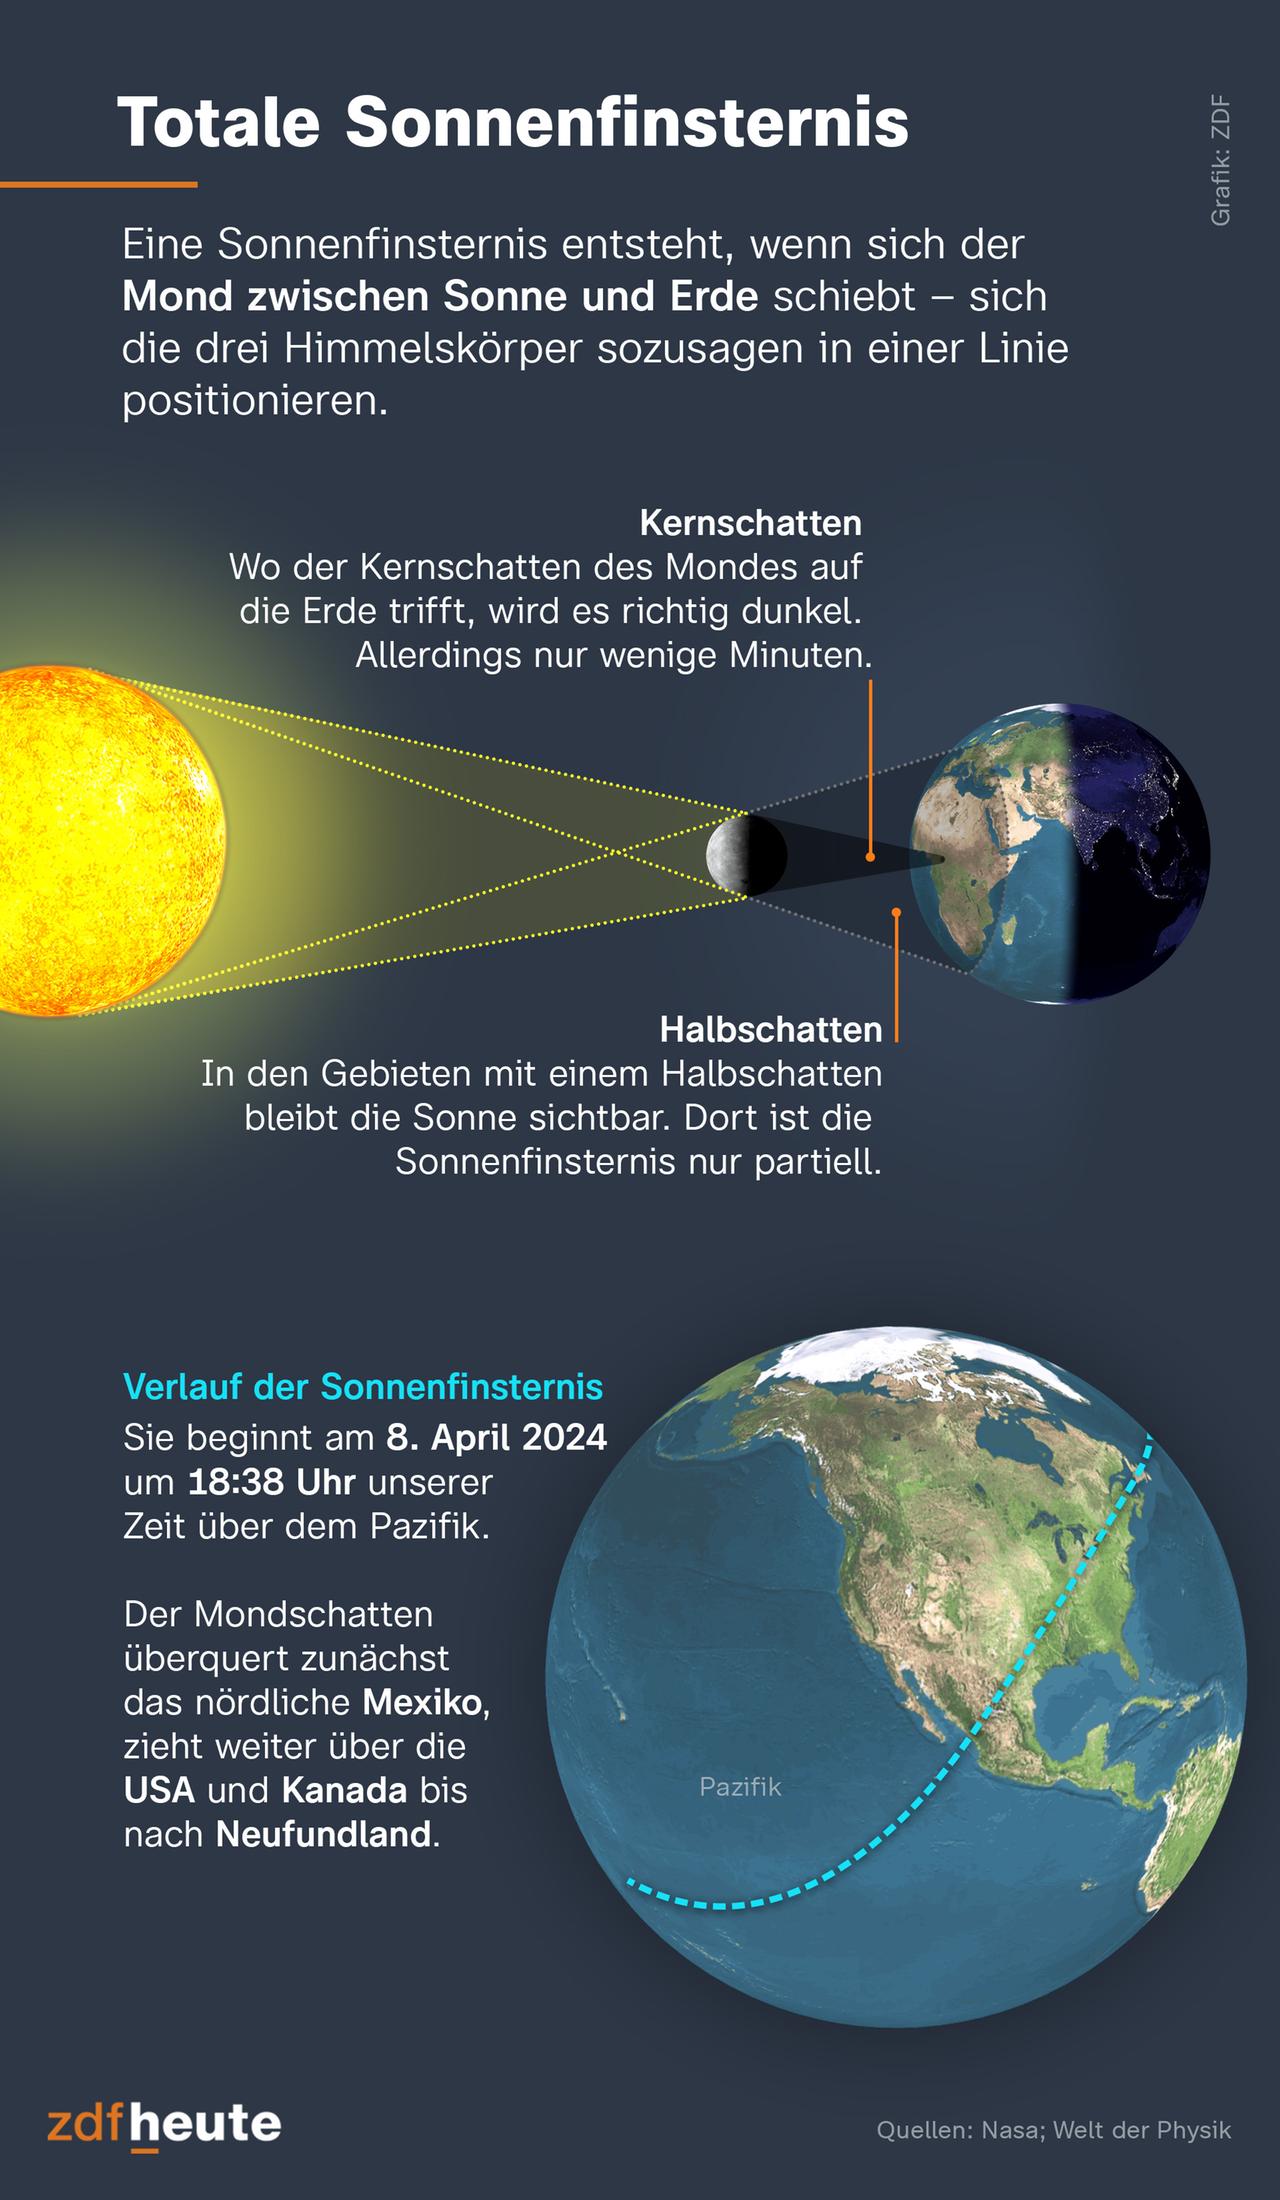 Eine Sonnenfinsternis entsteht, wenn sich der Mond zwischen Sonne und Erde schiebt - sich die drei Himmelskörper sozusagen in einer Linie positionieren. Wo der Kernschatten des Mondes auf die Erde trifft, wird es richtig dunkel. Allerdings nur wenige Minuten. In den Gebieten mit einem Halbschatten bleibt die Sonne sichtbar. Dort ist die Sonnenfinsternis nur partiell. Die nächste Sonnenfinsternis beginnt am 8. April 2024 um 18.38 Uhr unserer Zeit über dem Pazifik. Der Mondschatten überquert zunächst das nördliche Mexiko, zieht weiter über die USA und Kanada bis nach Neufundland.